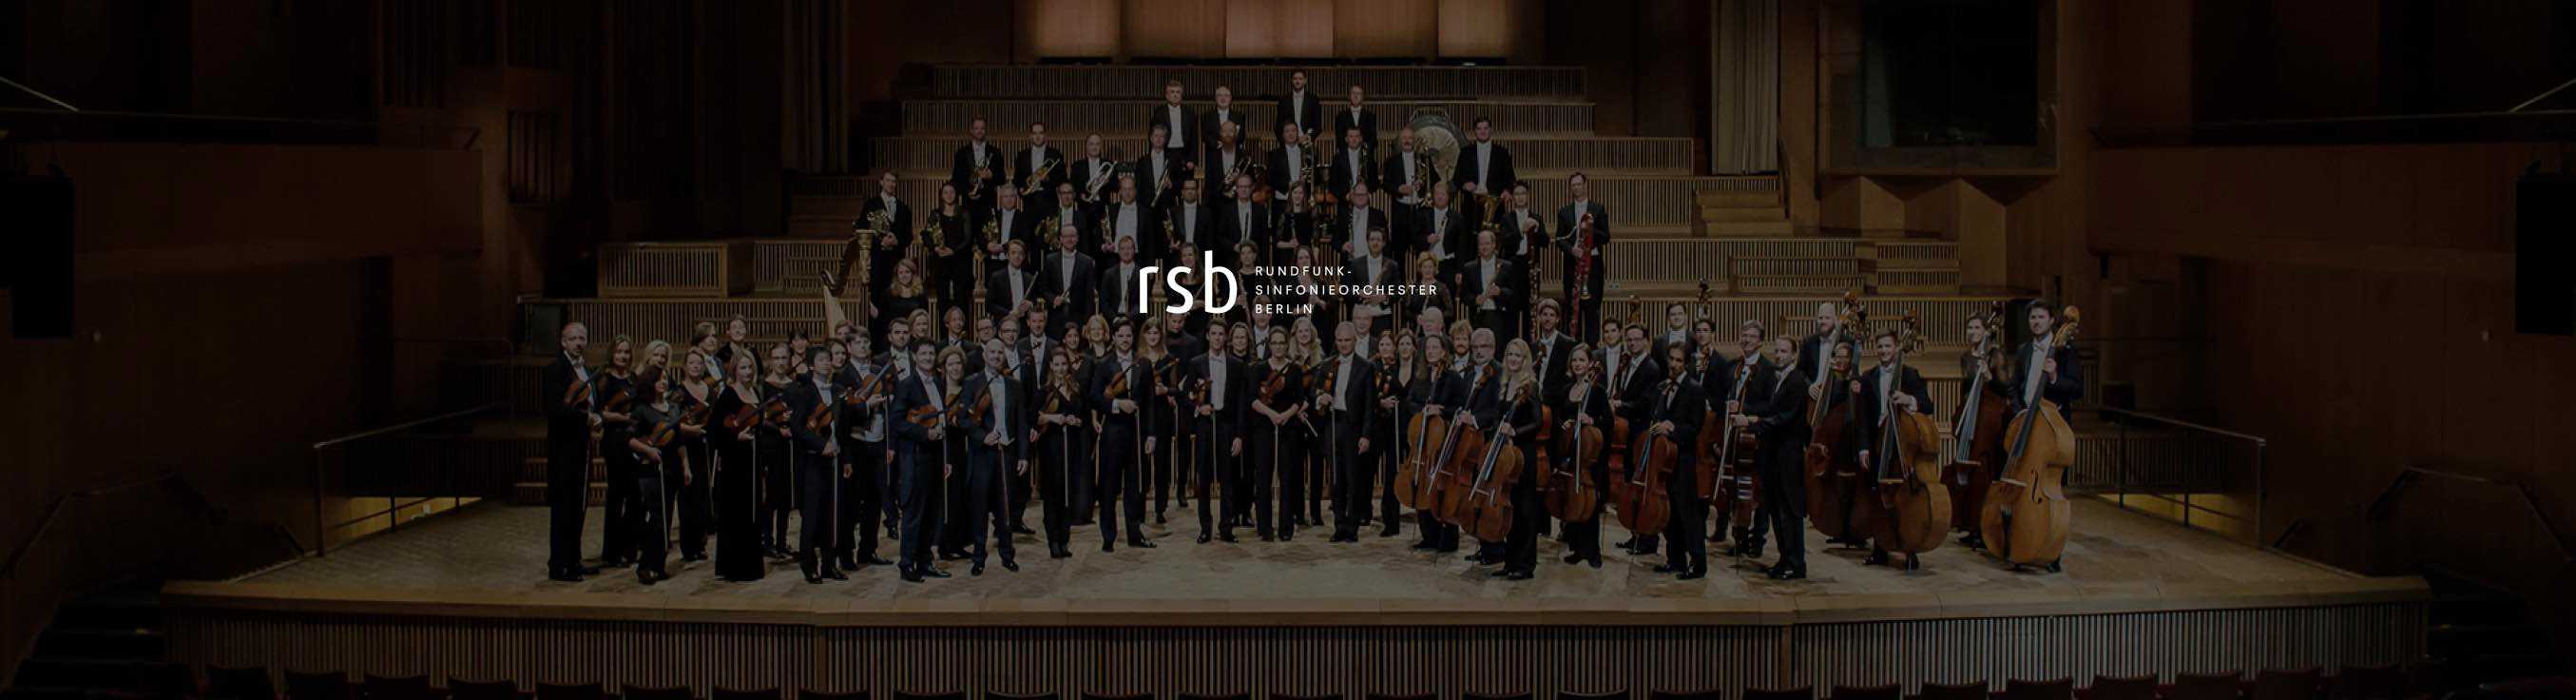 Rundfunk-Sinfonieorchester in der Philharmonie Berlin